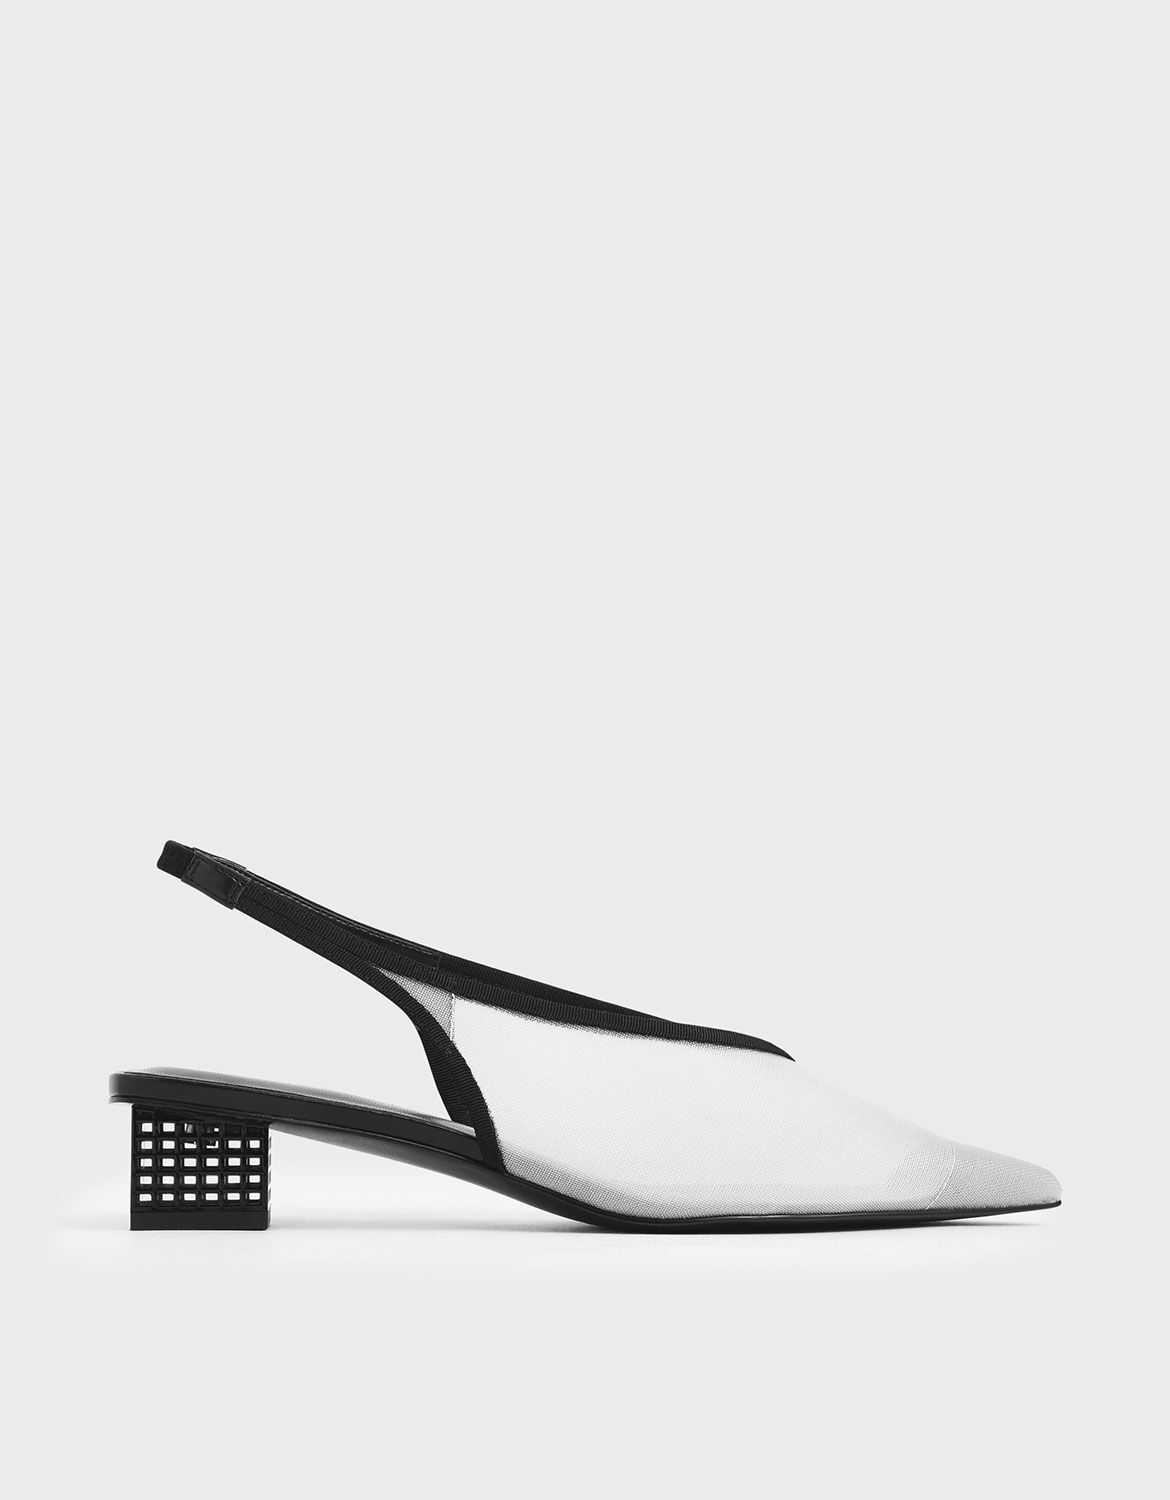 mesh white heels